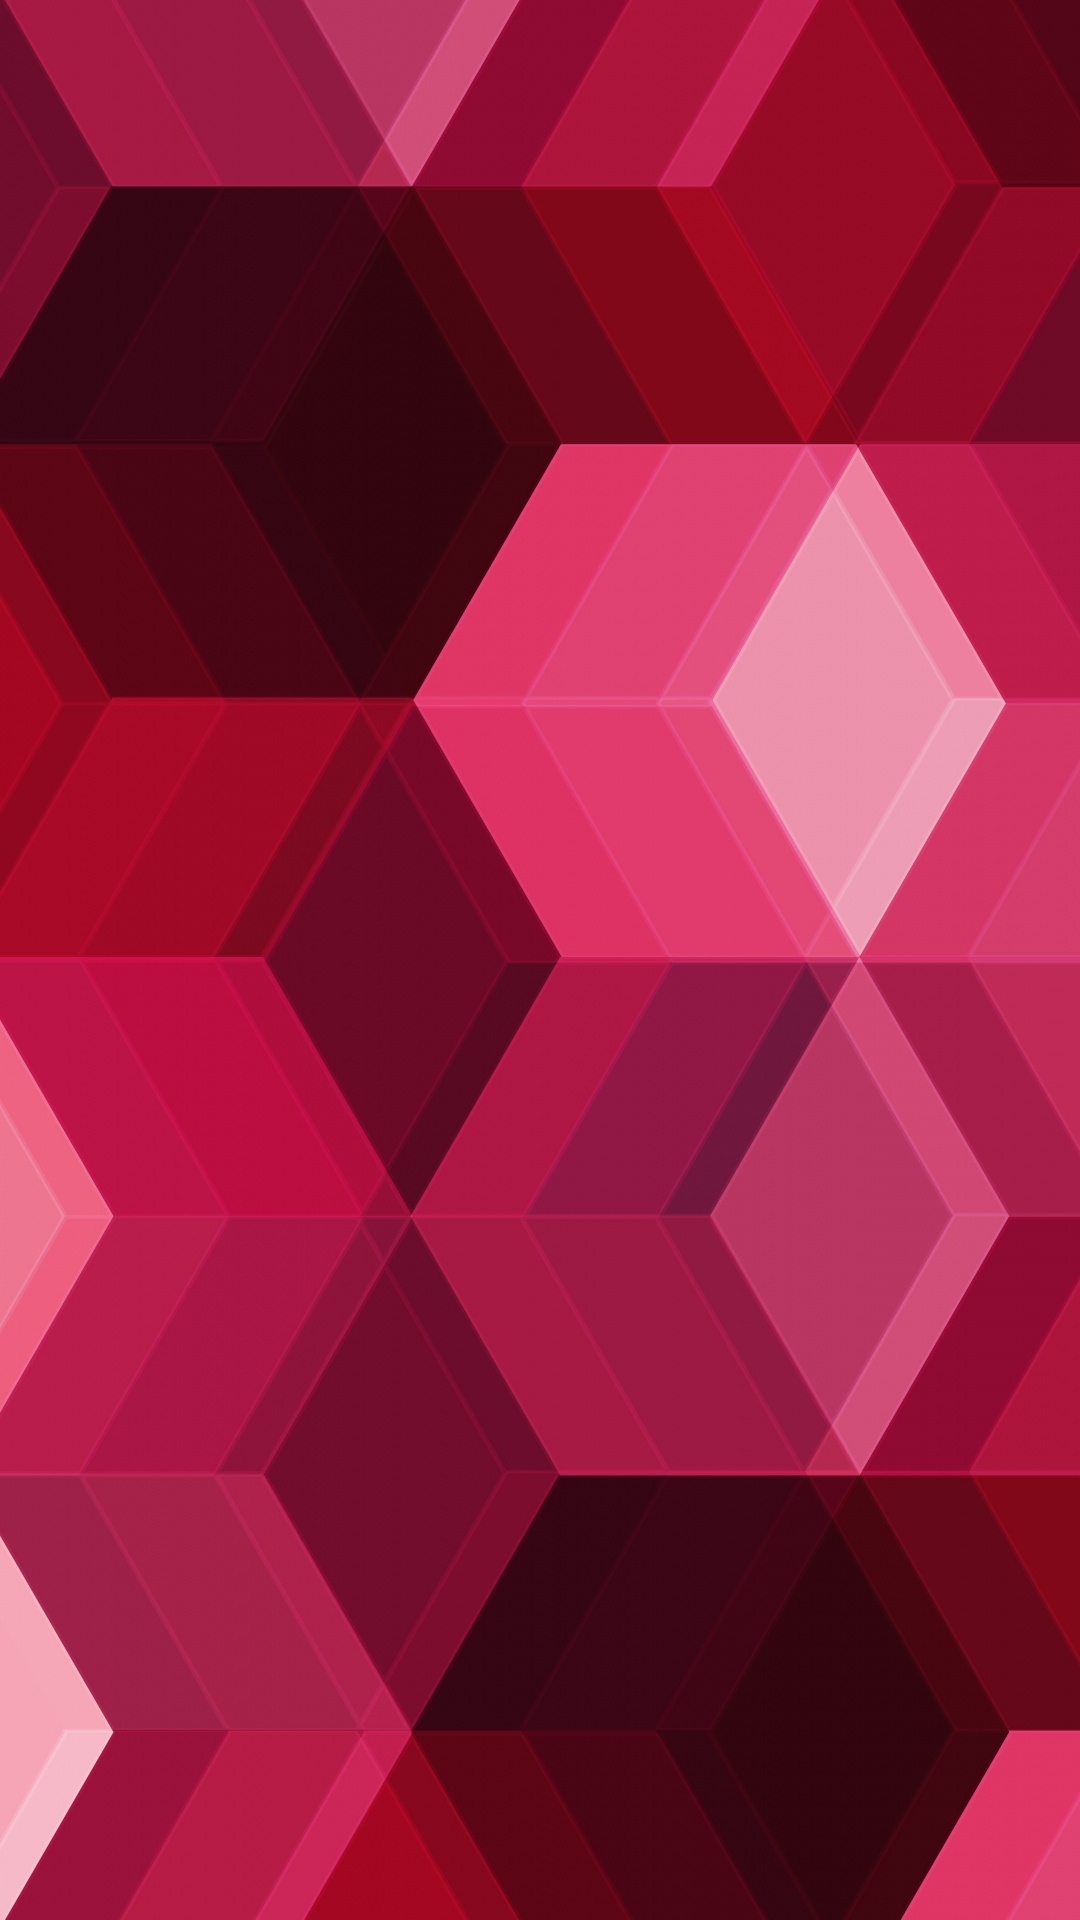 粉红色, 品红色, 对称, 立方体, 形状 壁纸 1080x1920 允许